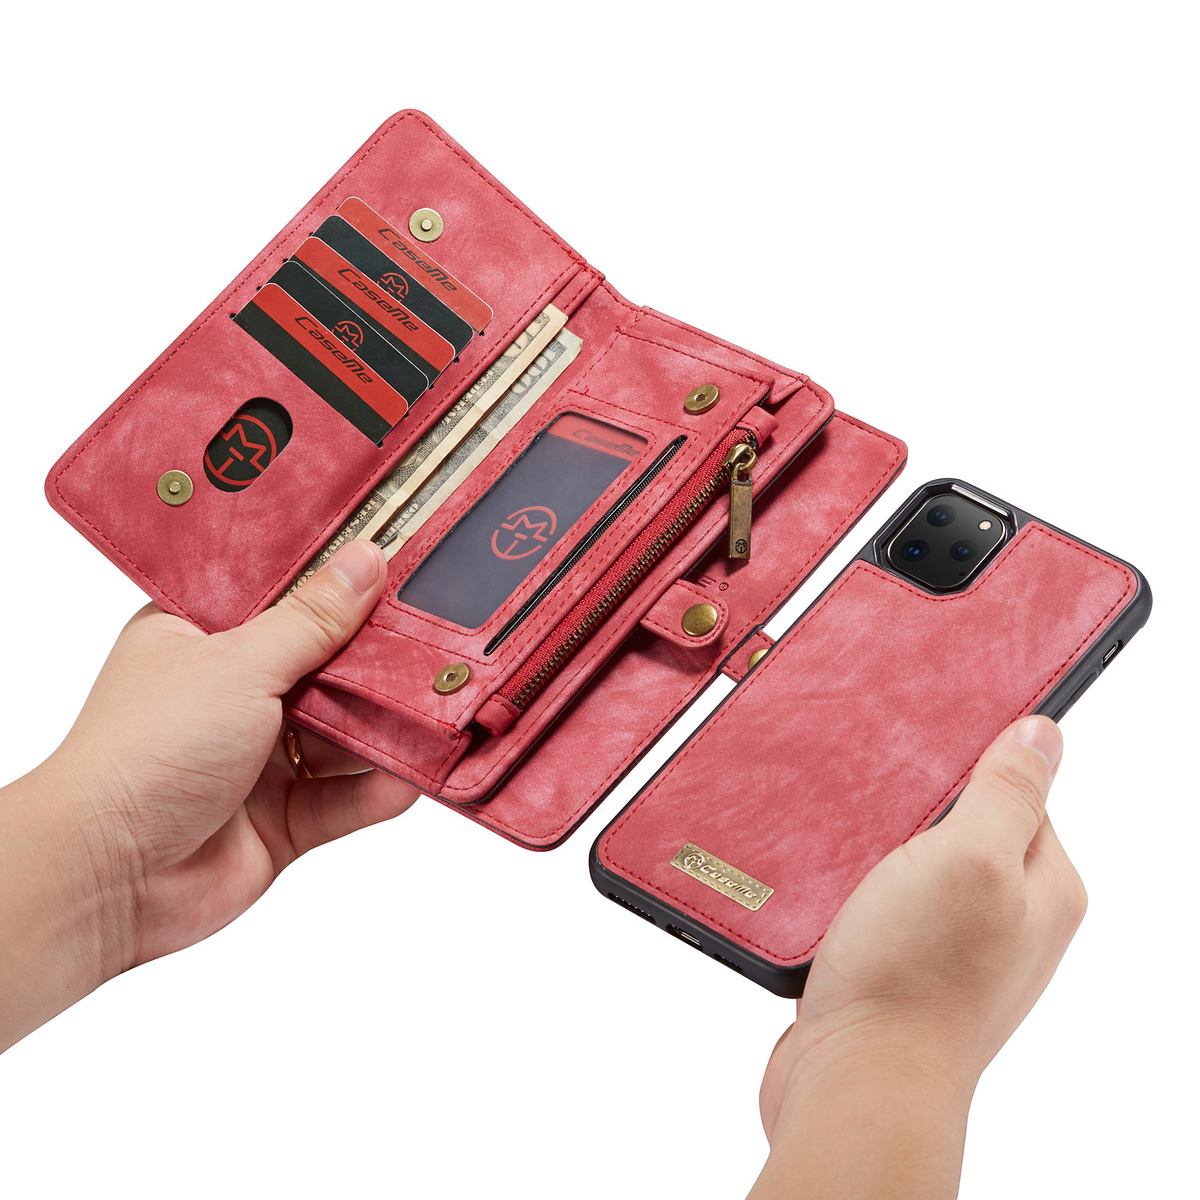 CaseMe plånboksfodral med magnetskal, iPhone 11 Pro Max, röd